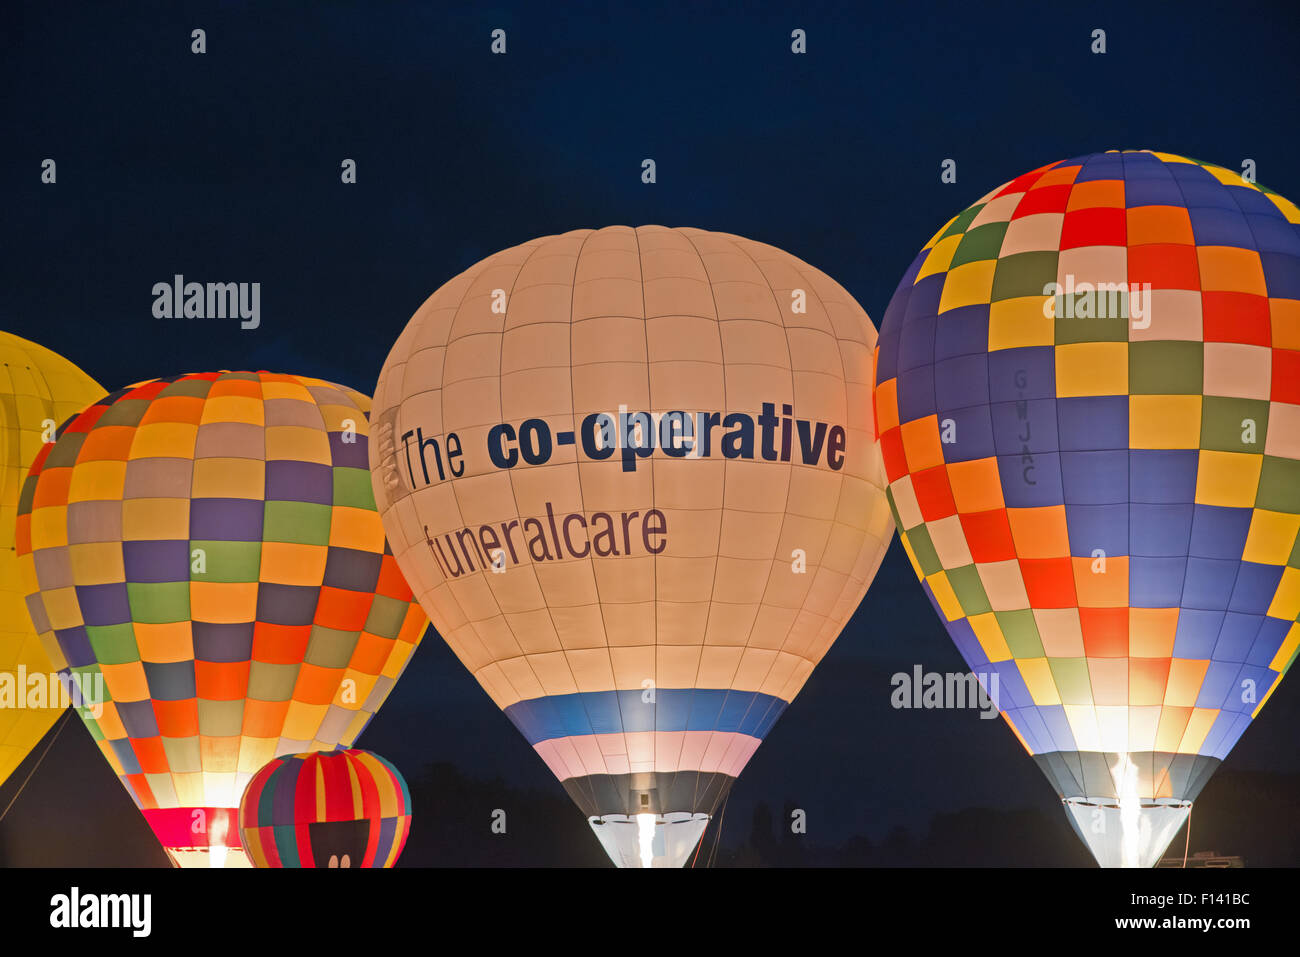 Pallone aerostatico notte glow mostra nel Regno Unito Foto Stock